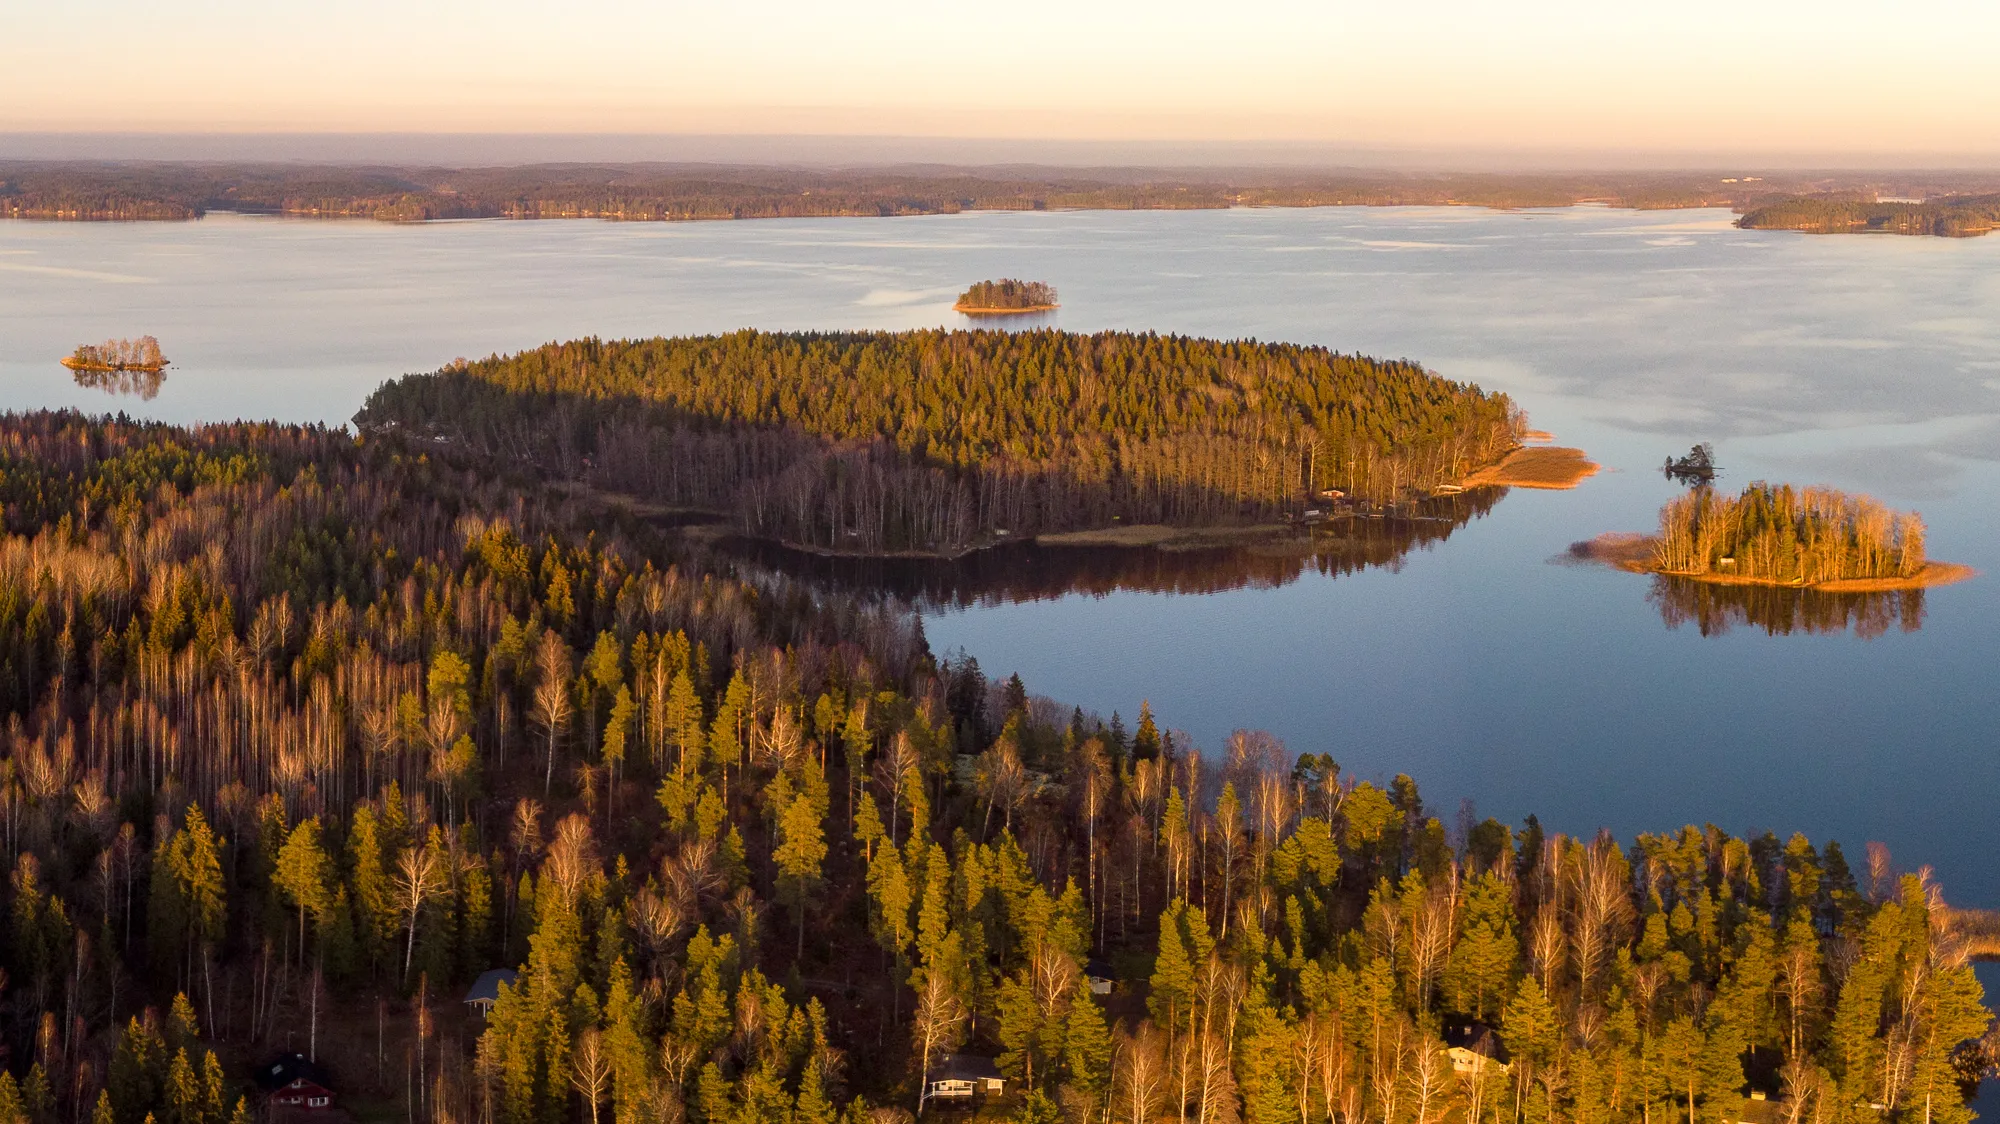 Photo showing: The island of Kuulukainen in Lohjanjärvi, Finland, with the smaller islands of Jyrkönsaari, Virmoo, and Karhusaari visible around it.